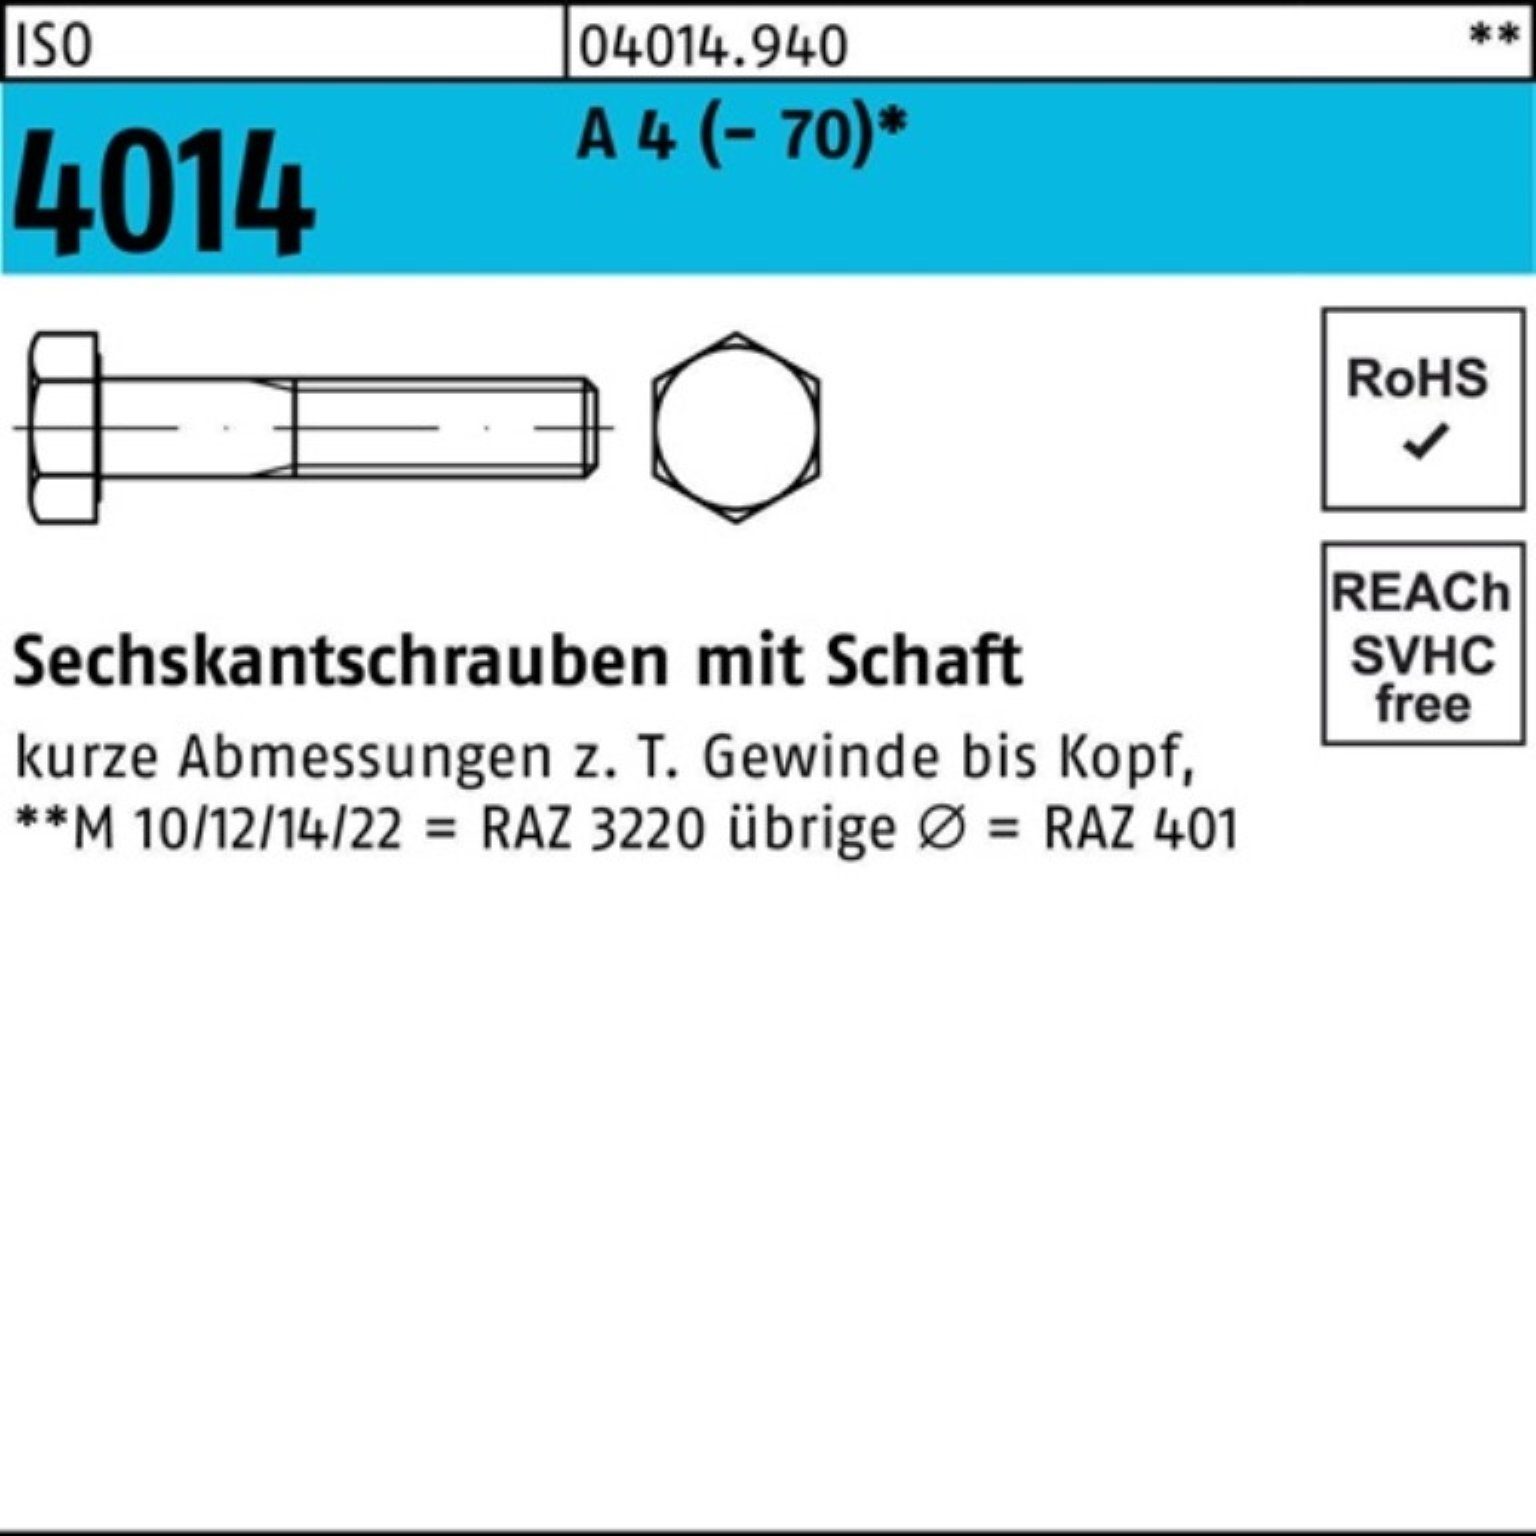 Bufab Sechskantschraube 100er Pack Sechskantschraube ISO 4014 Schaft M10x 100 A 4 (70) 50 St